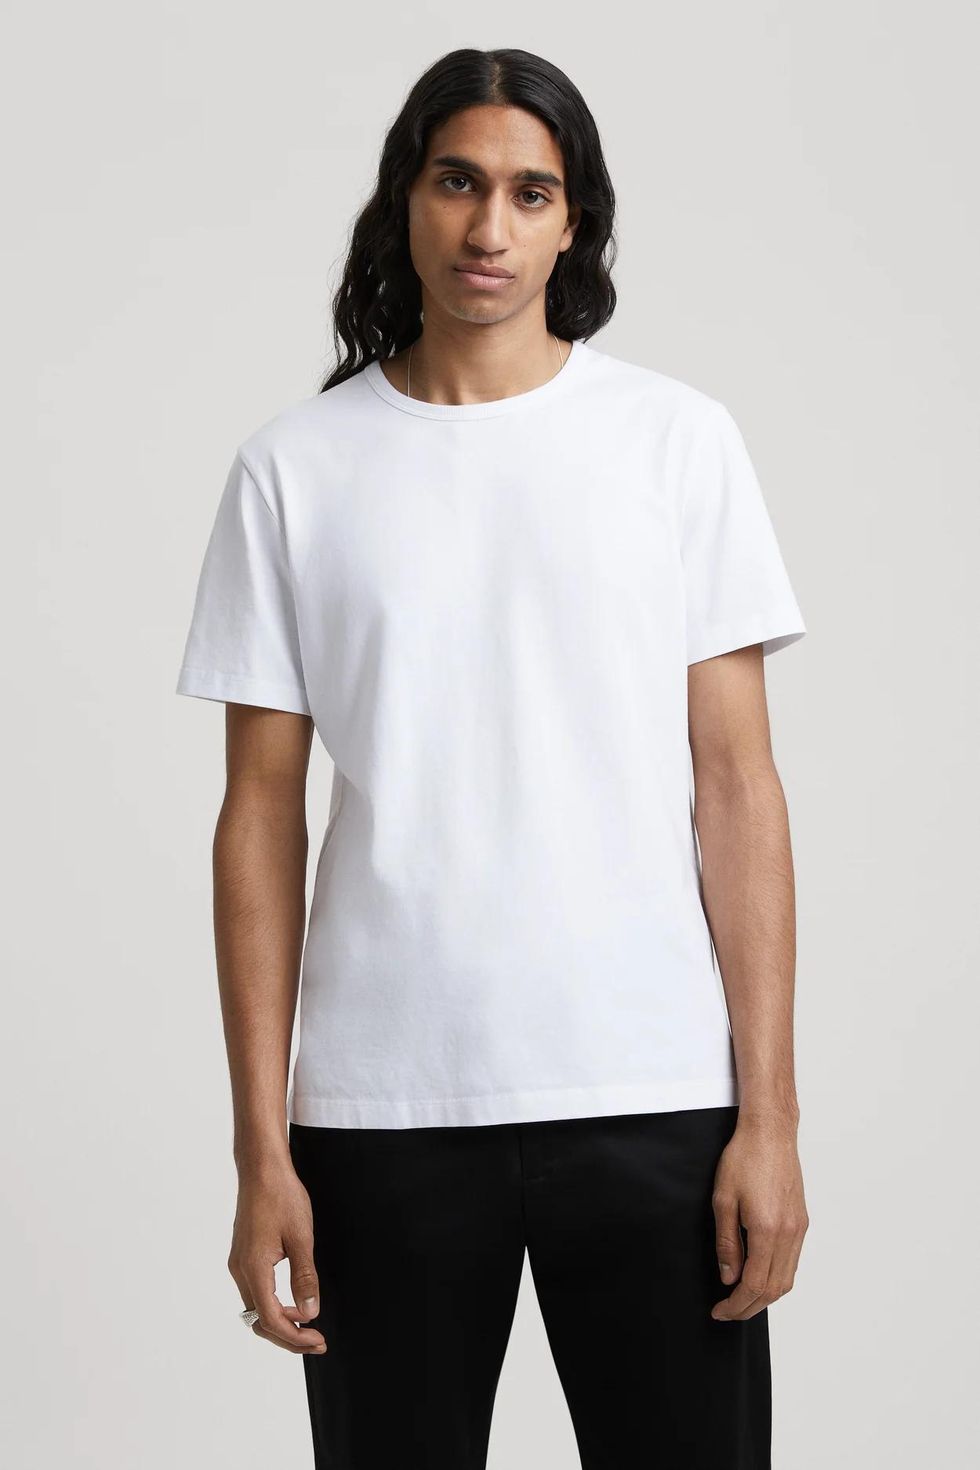 Buy Men's Printed T-Shirt - V Neck & Get 20% Off